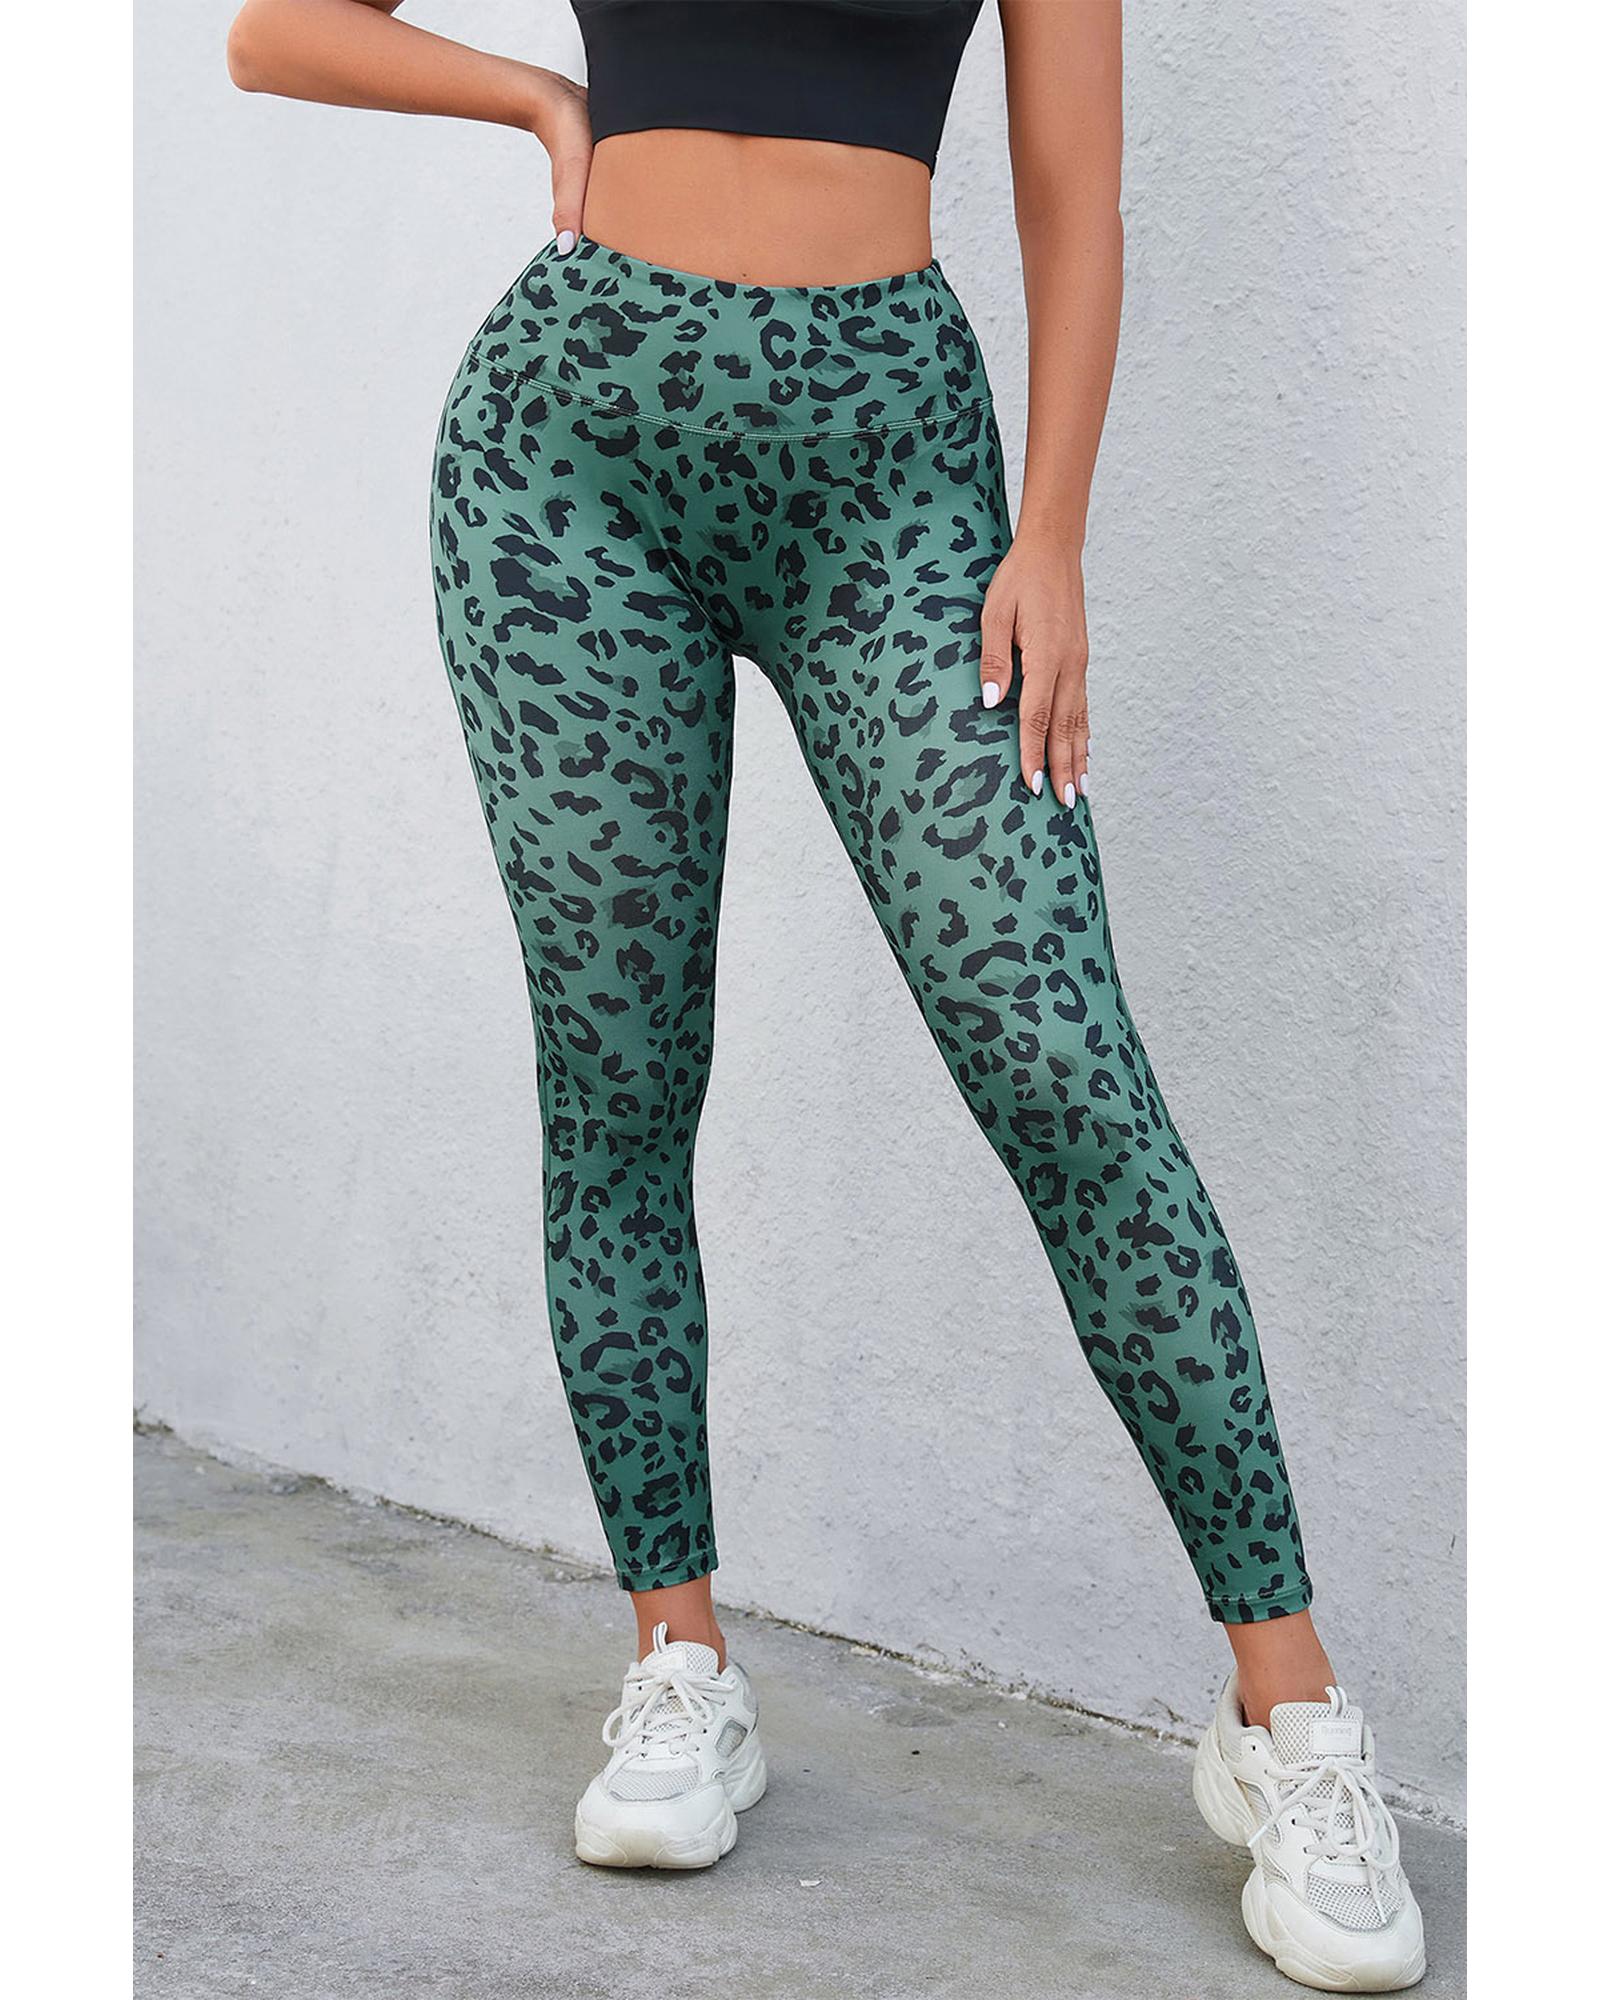 Leopard Print Active Leggings - XL